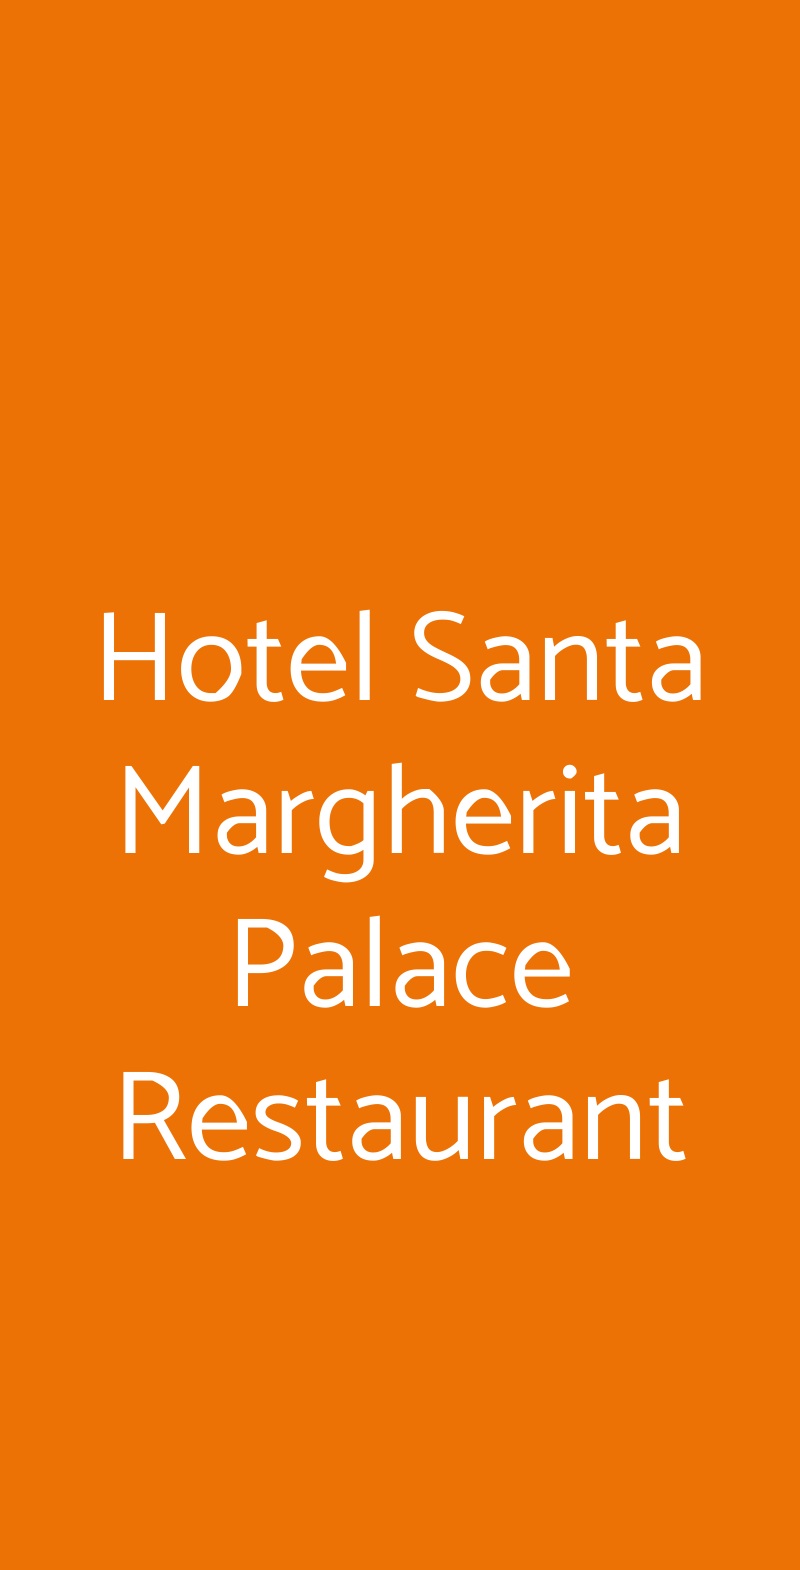 Hotel Santa Margherita Palace Restaurant Santa Margherita Ligure menù 1 pagina